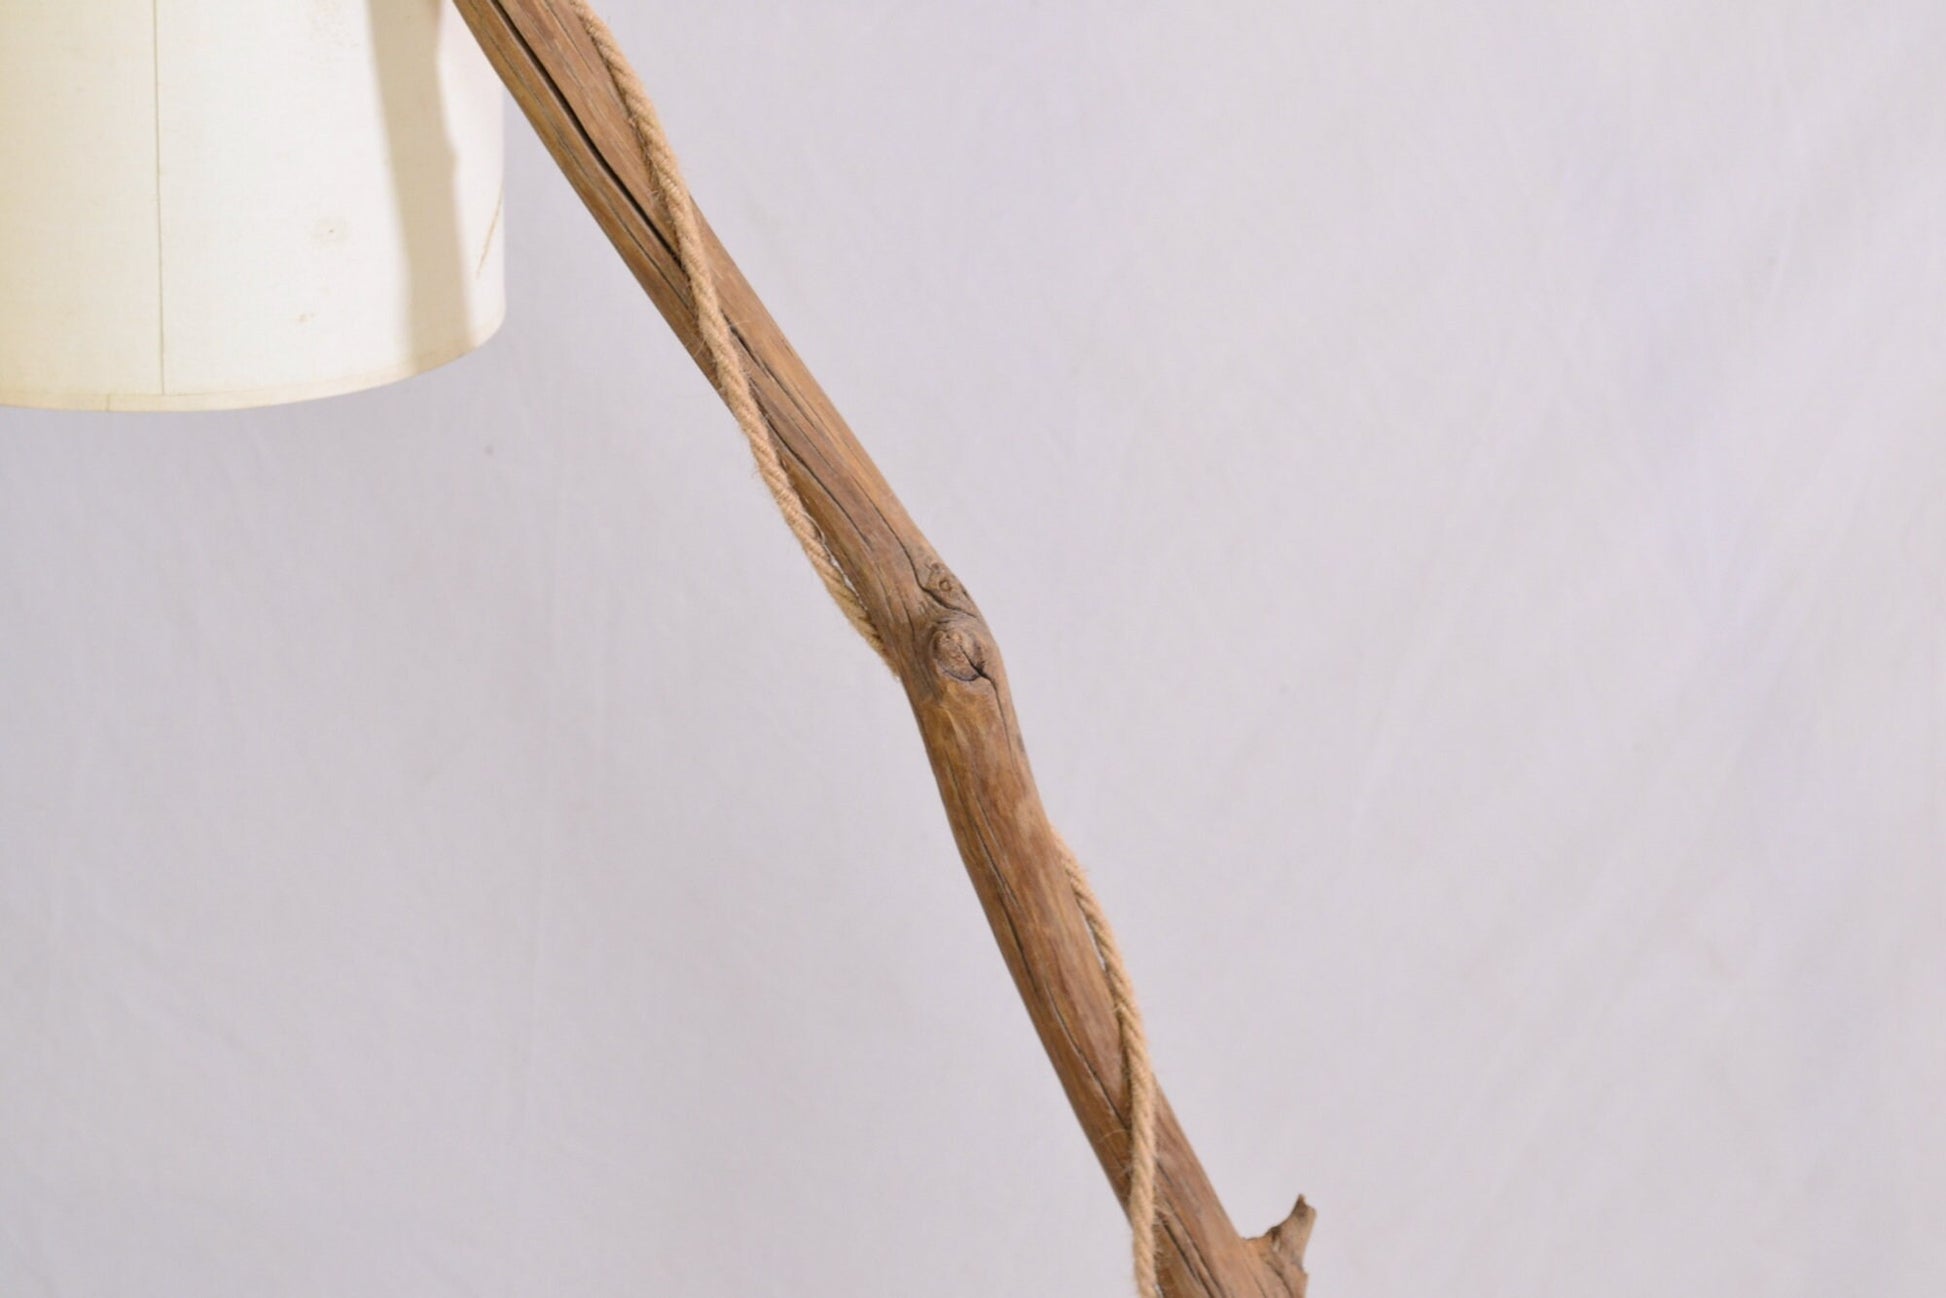 Lampadaire en bois avec une branche de châtaignier patinée par le temps